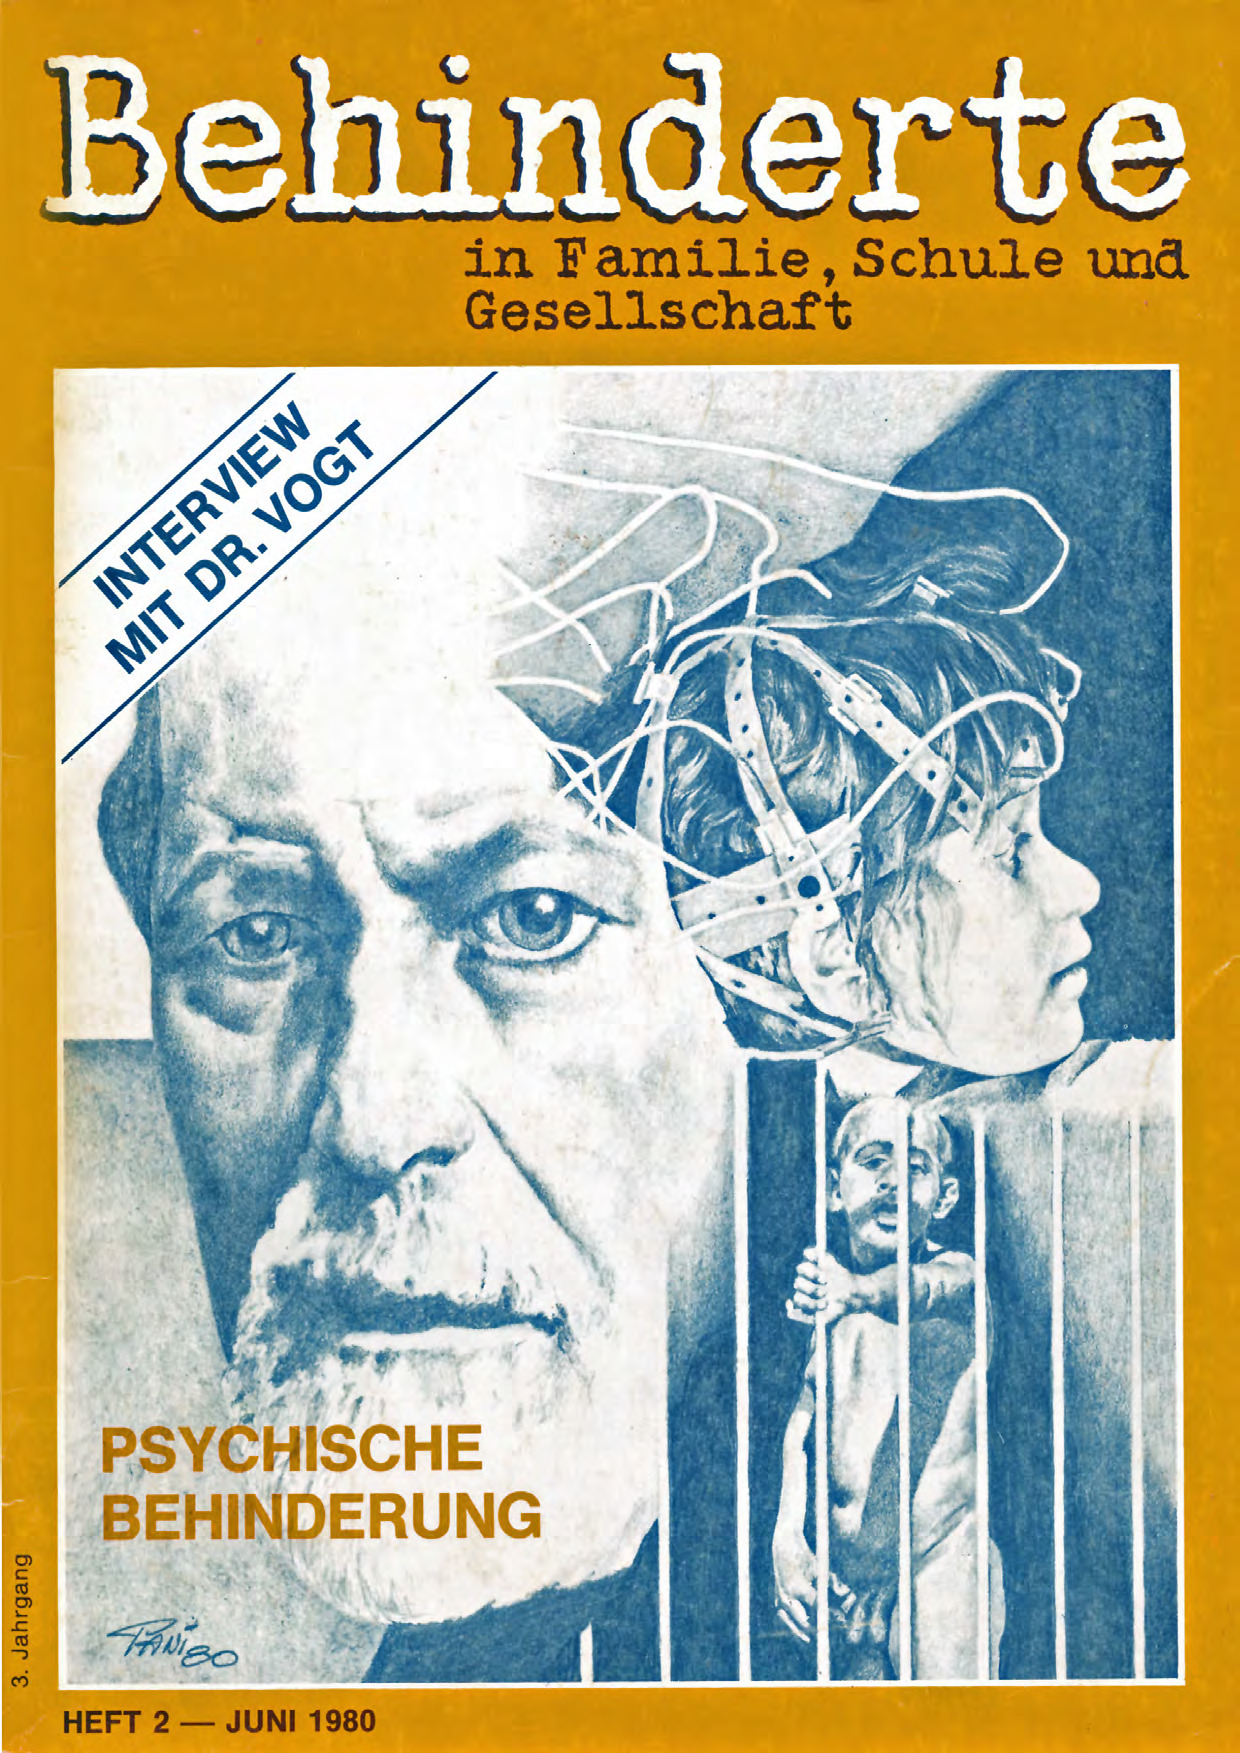 Titelbild der Zeitschrift BEHINDERTE MENSCHEN, Ausgabe 2/1980 "Psychische Behinderung"